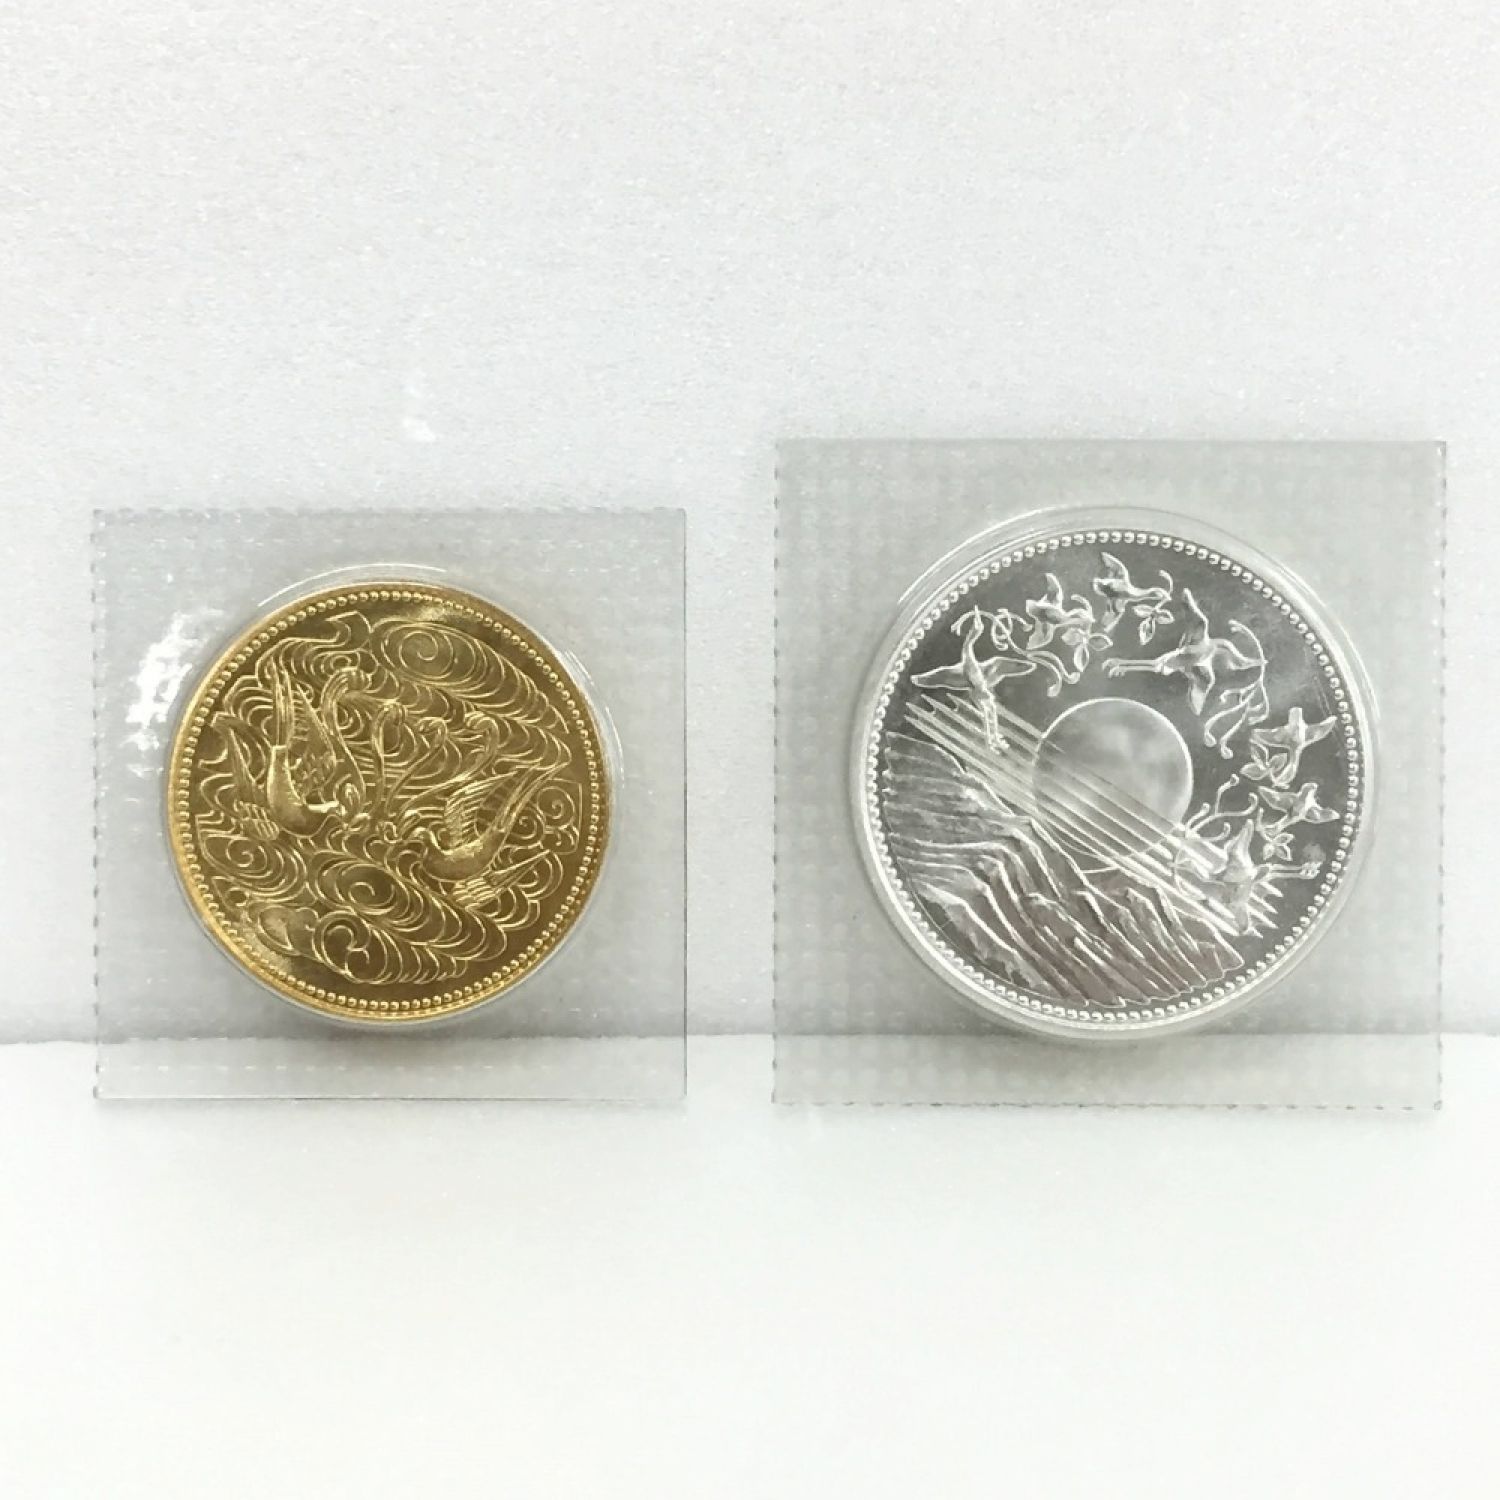 天皇陛下御在位60年記念硬貨 1万円銀貨 - 美術品/アンティーク